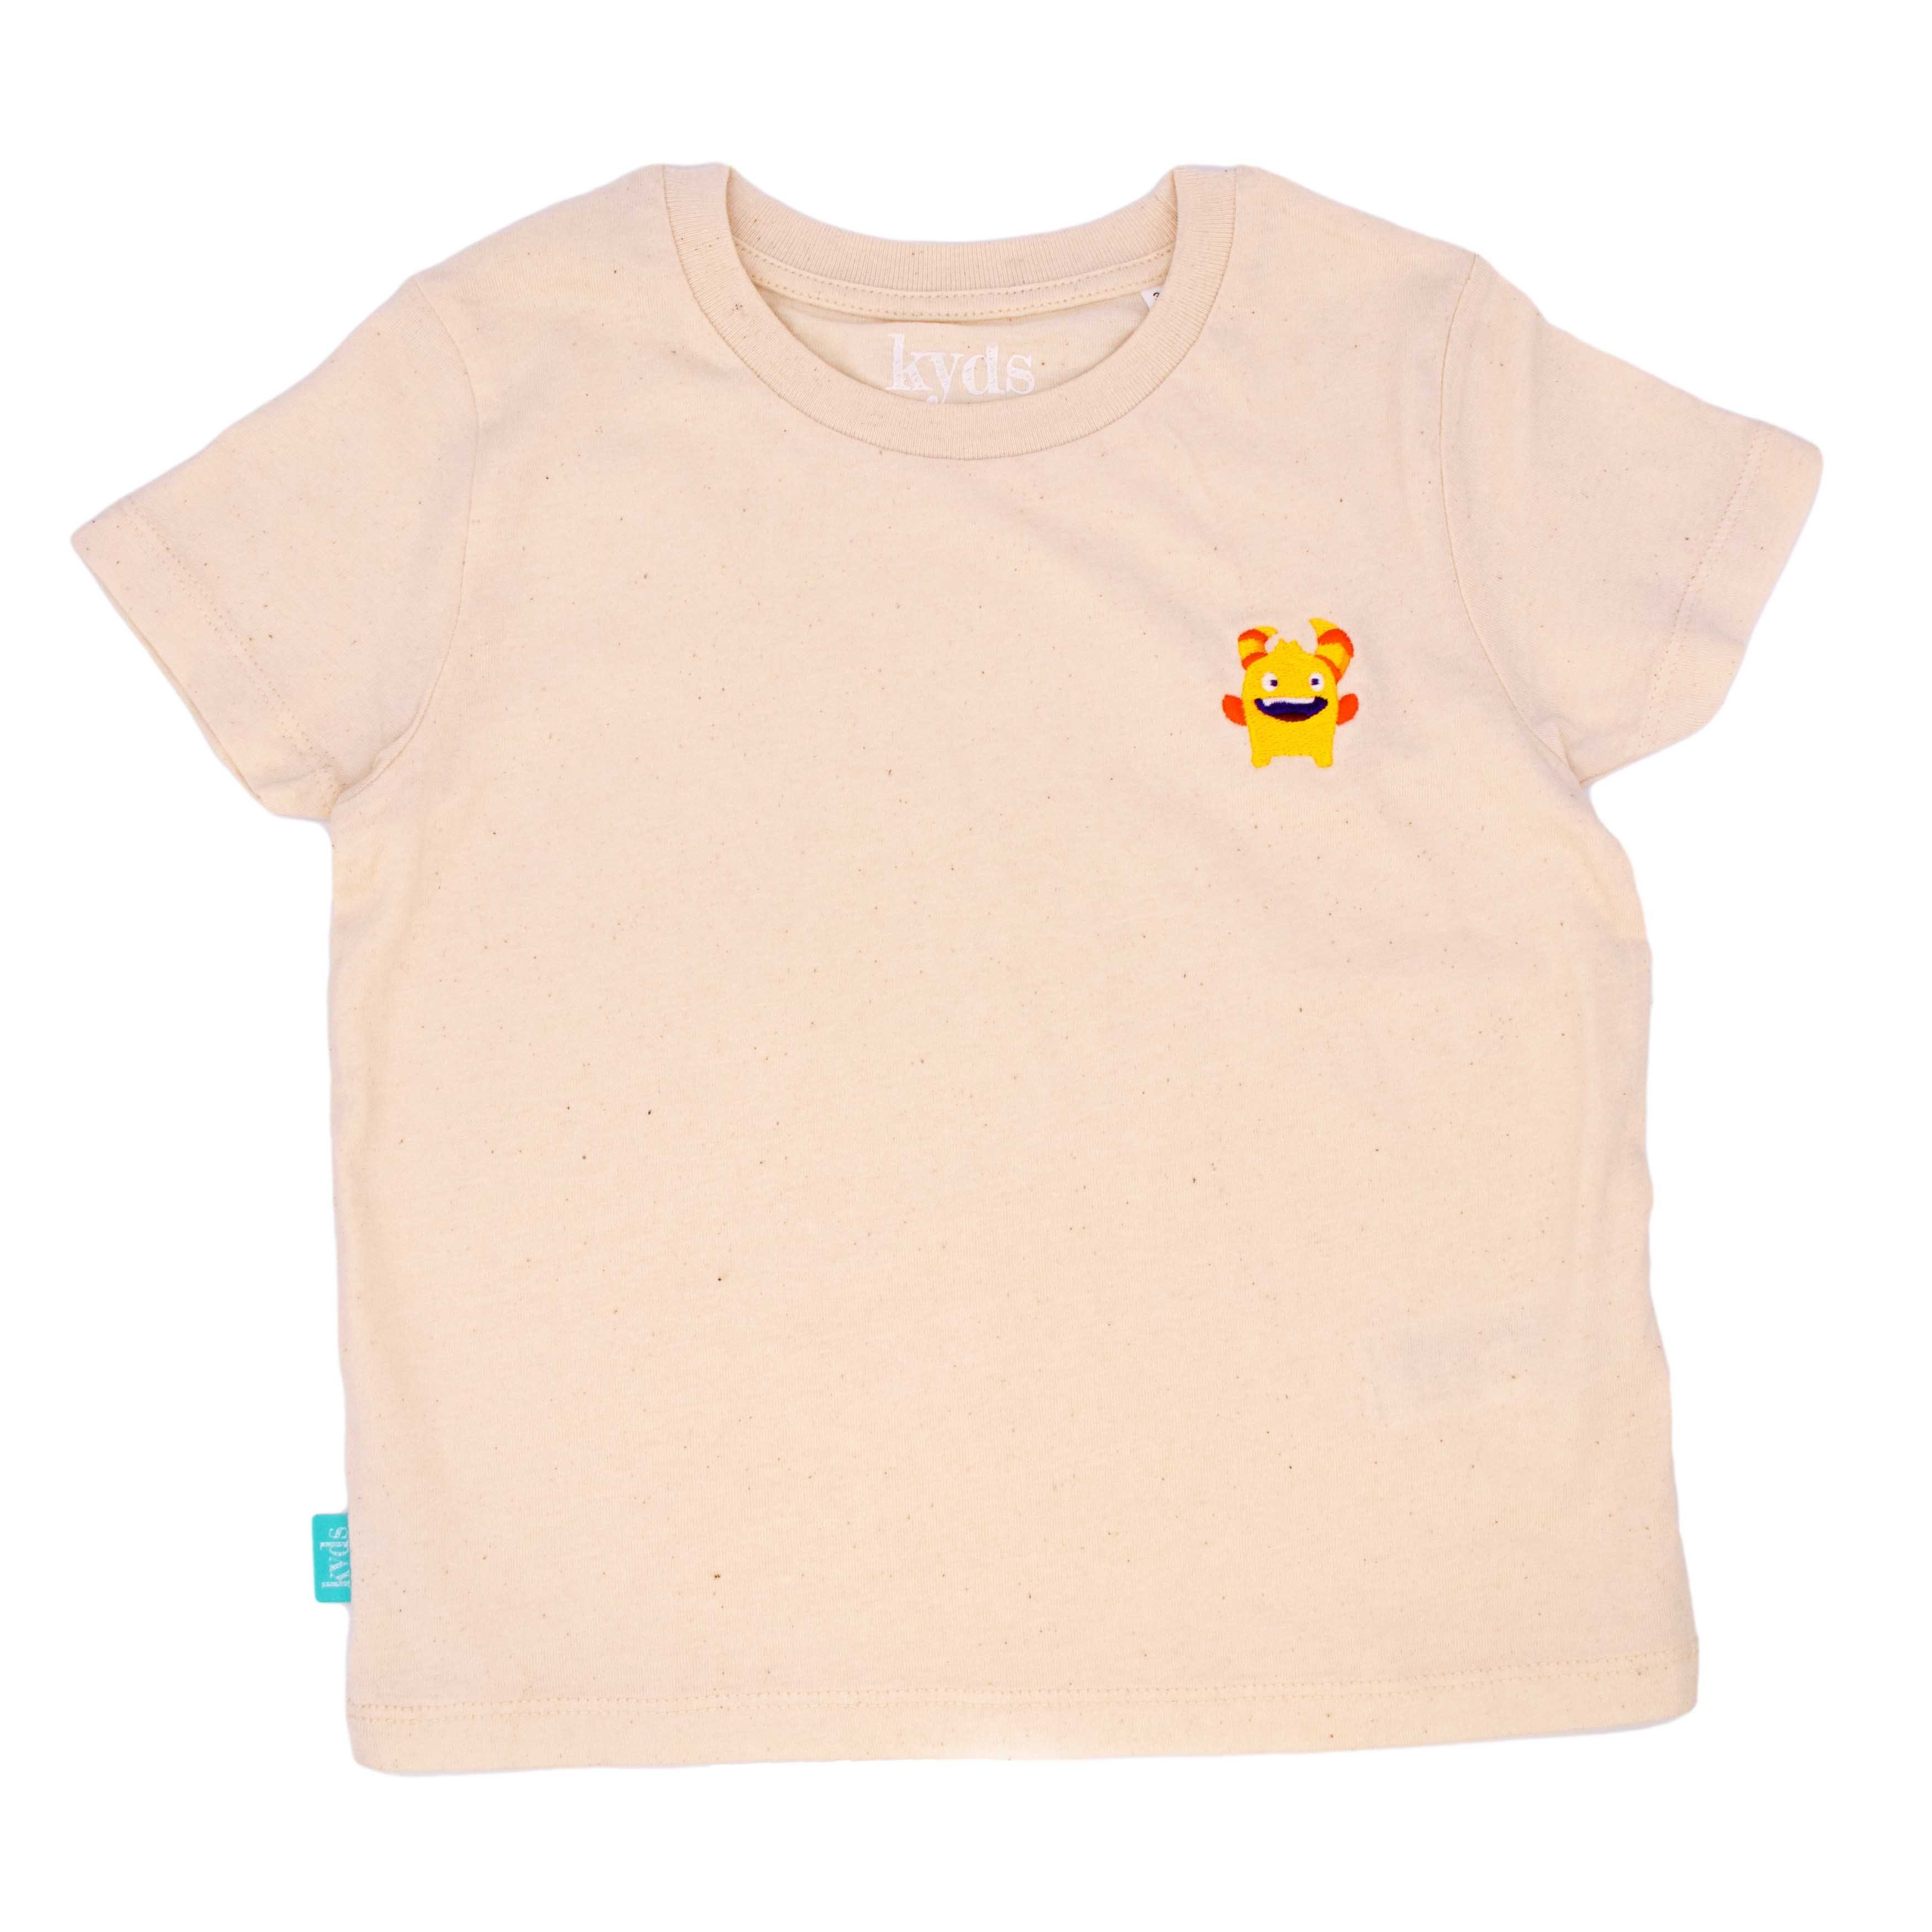 kyds T-Shirt Monster, Nachhaltiges Kinder T-Shirt für Jungs und Mädchen ab 3 Jahren aus 100% Bio-Baumwolle | T-Shirts